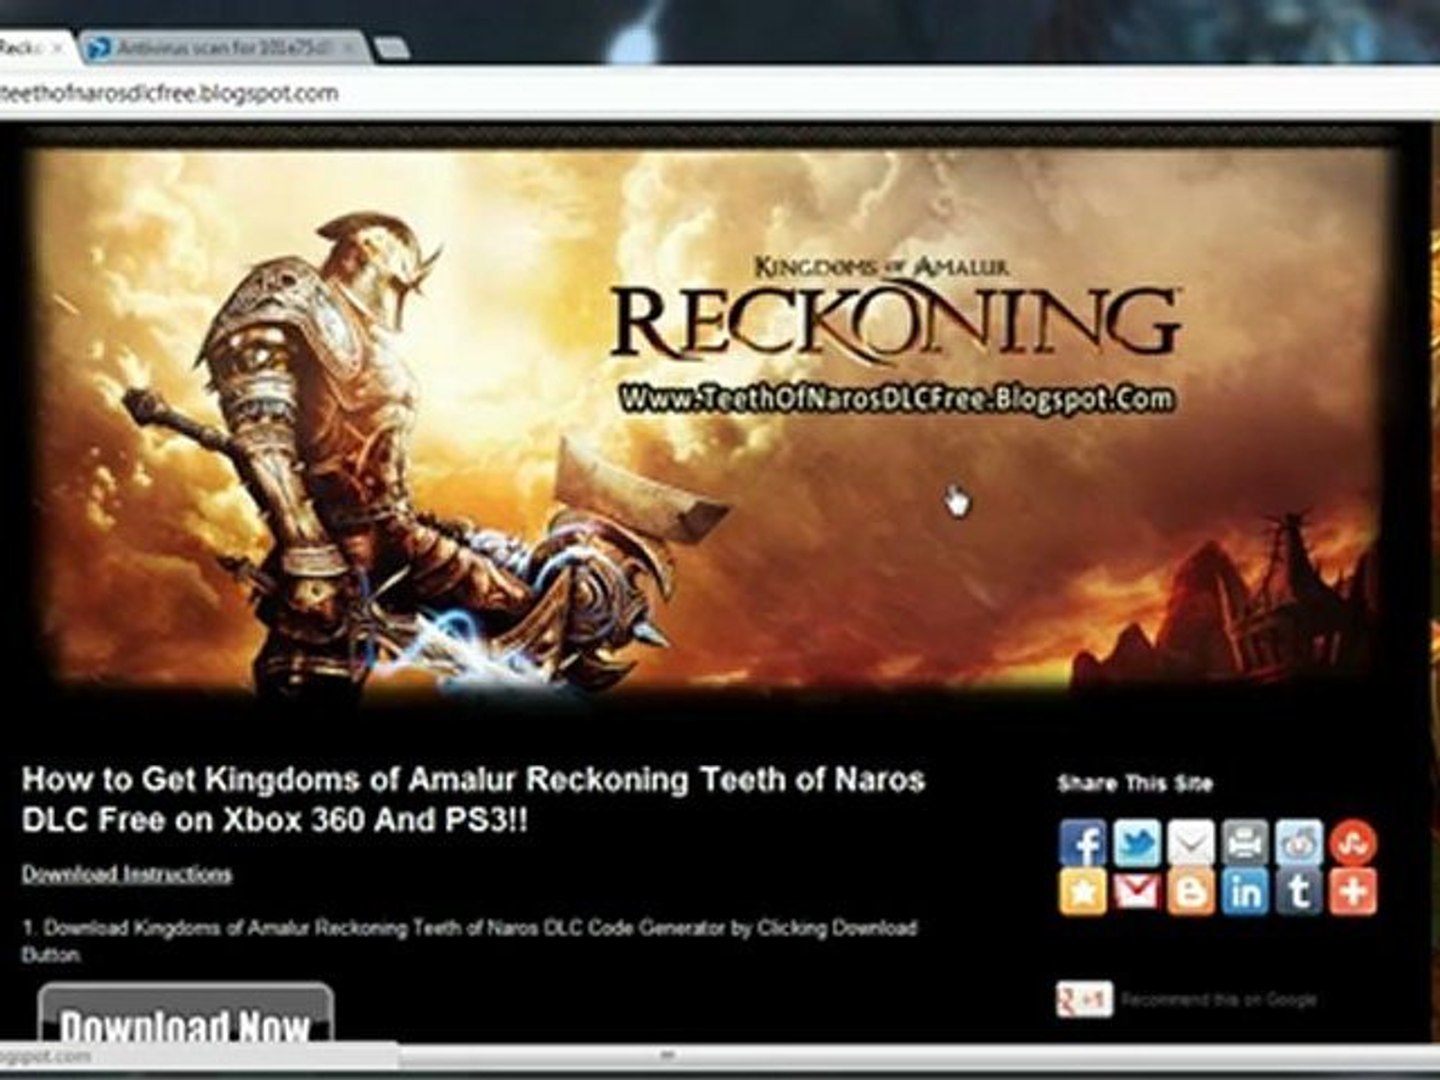 Get Free Kingdoms Of Amalur Reckoning Teeth of Naros DLC - Xbox 360 - PS3 -  video Dailymotion